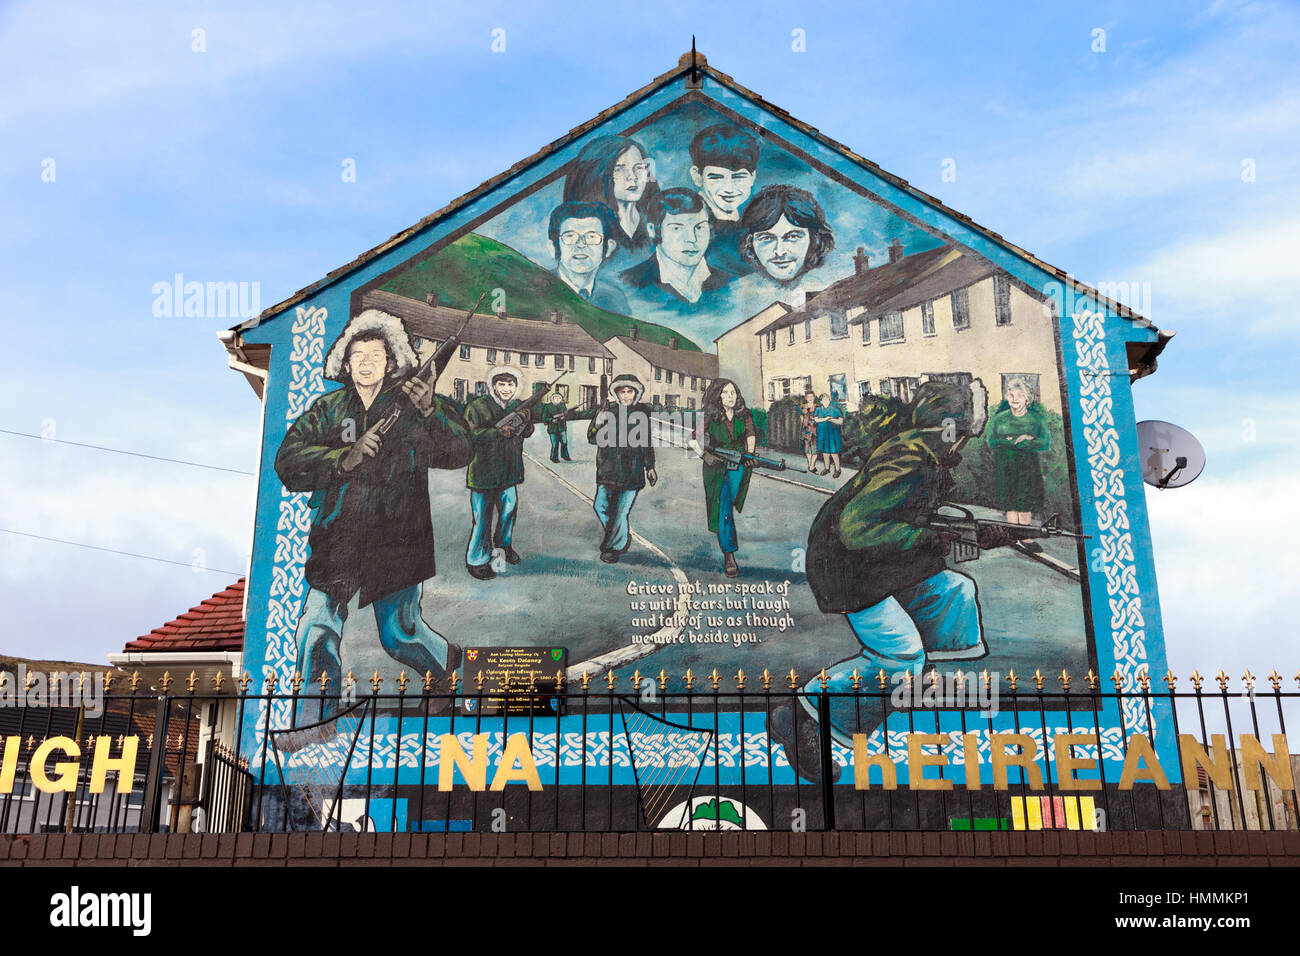 BELFAST, Nordirland - 9. Februar 2013: Wandbild in der Glenalina Straße mit fünf Porträts Mitglieder der IRA in Belfast, Northern Irelan gedacht Stockfoto